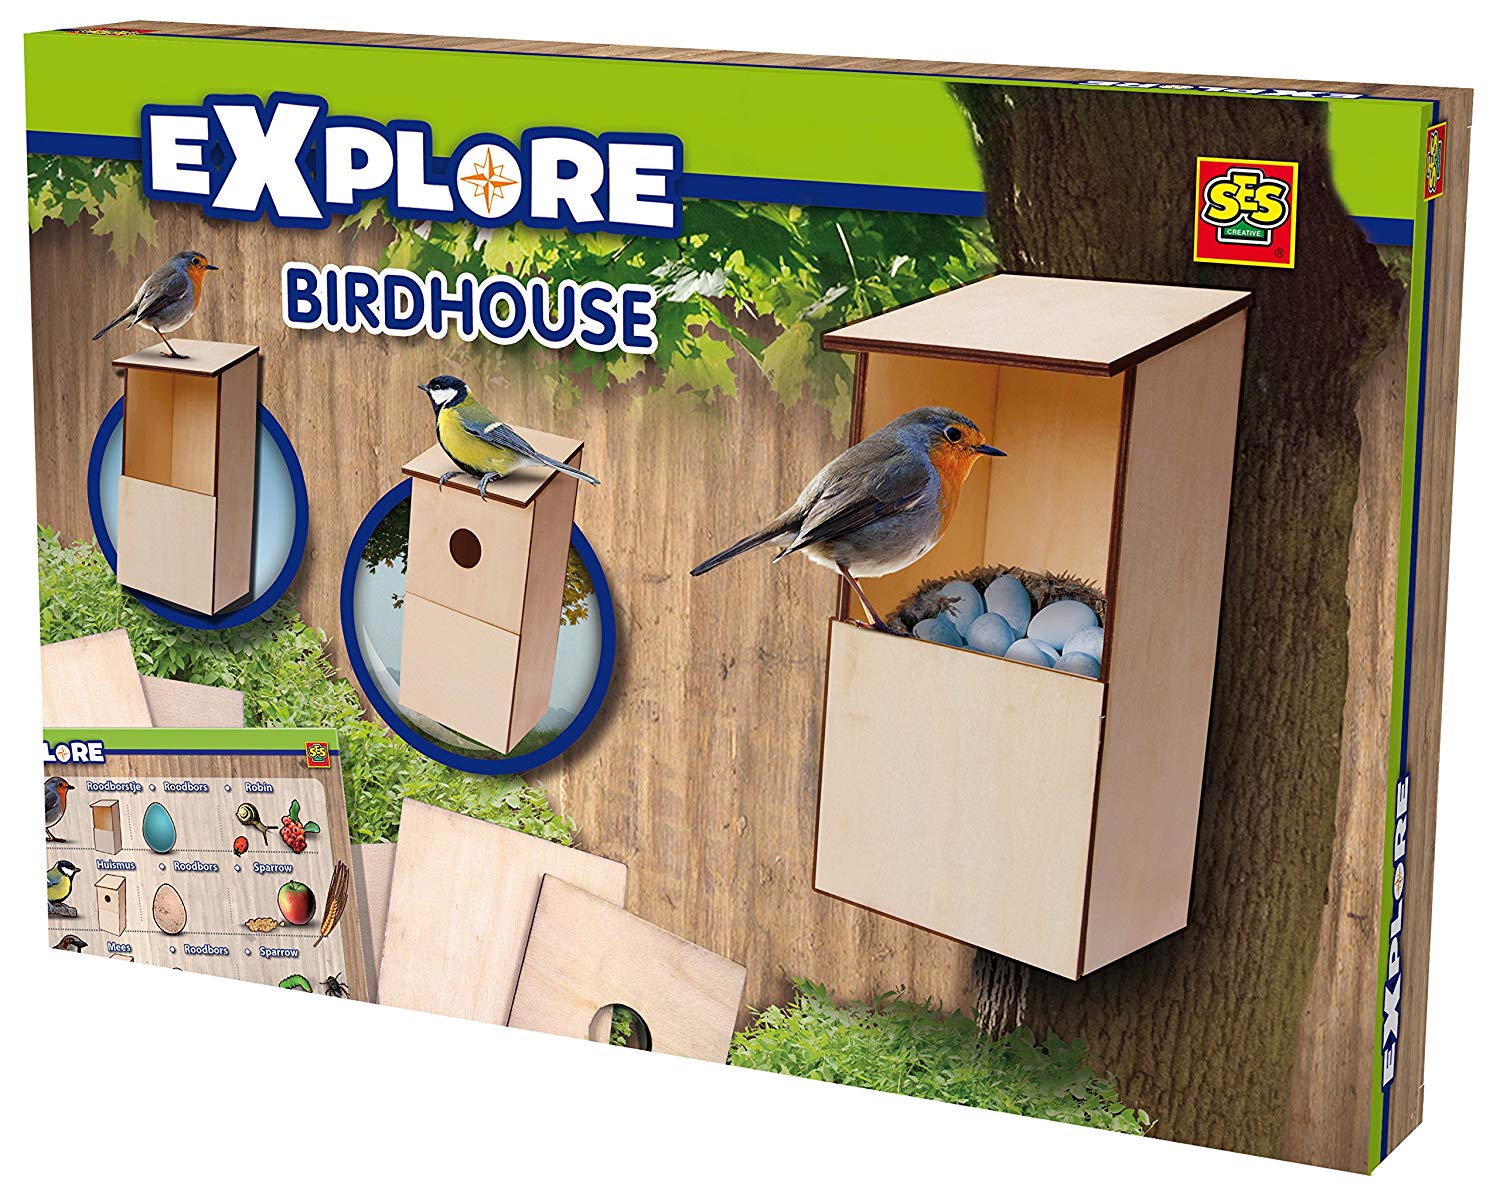 Ses Exlore Birdhouse